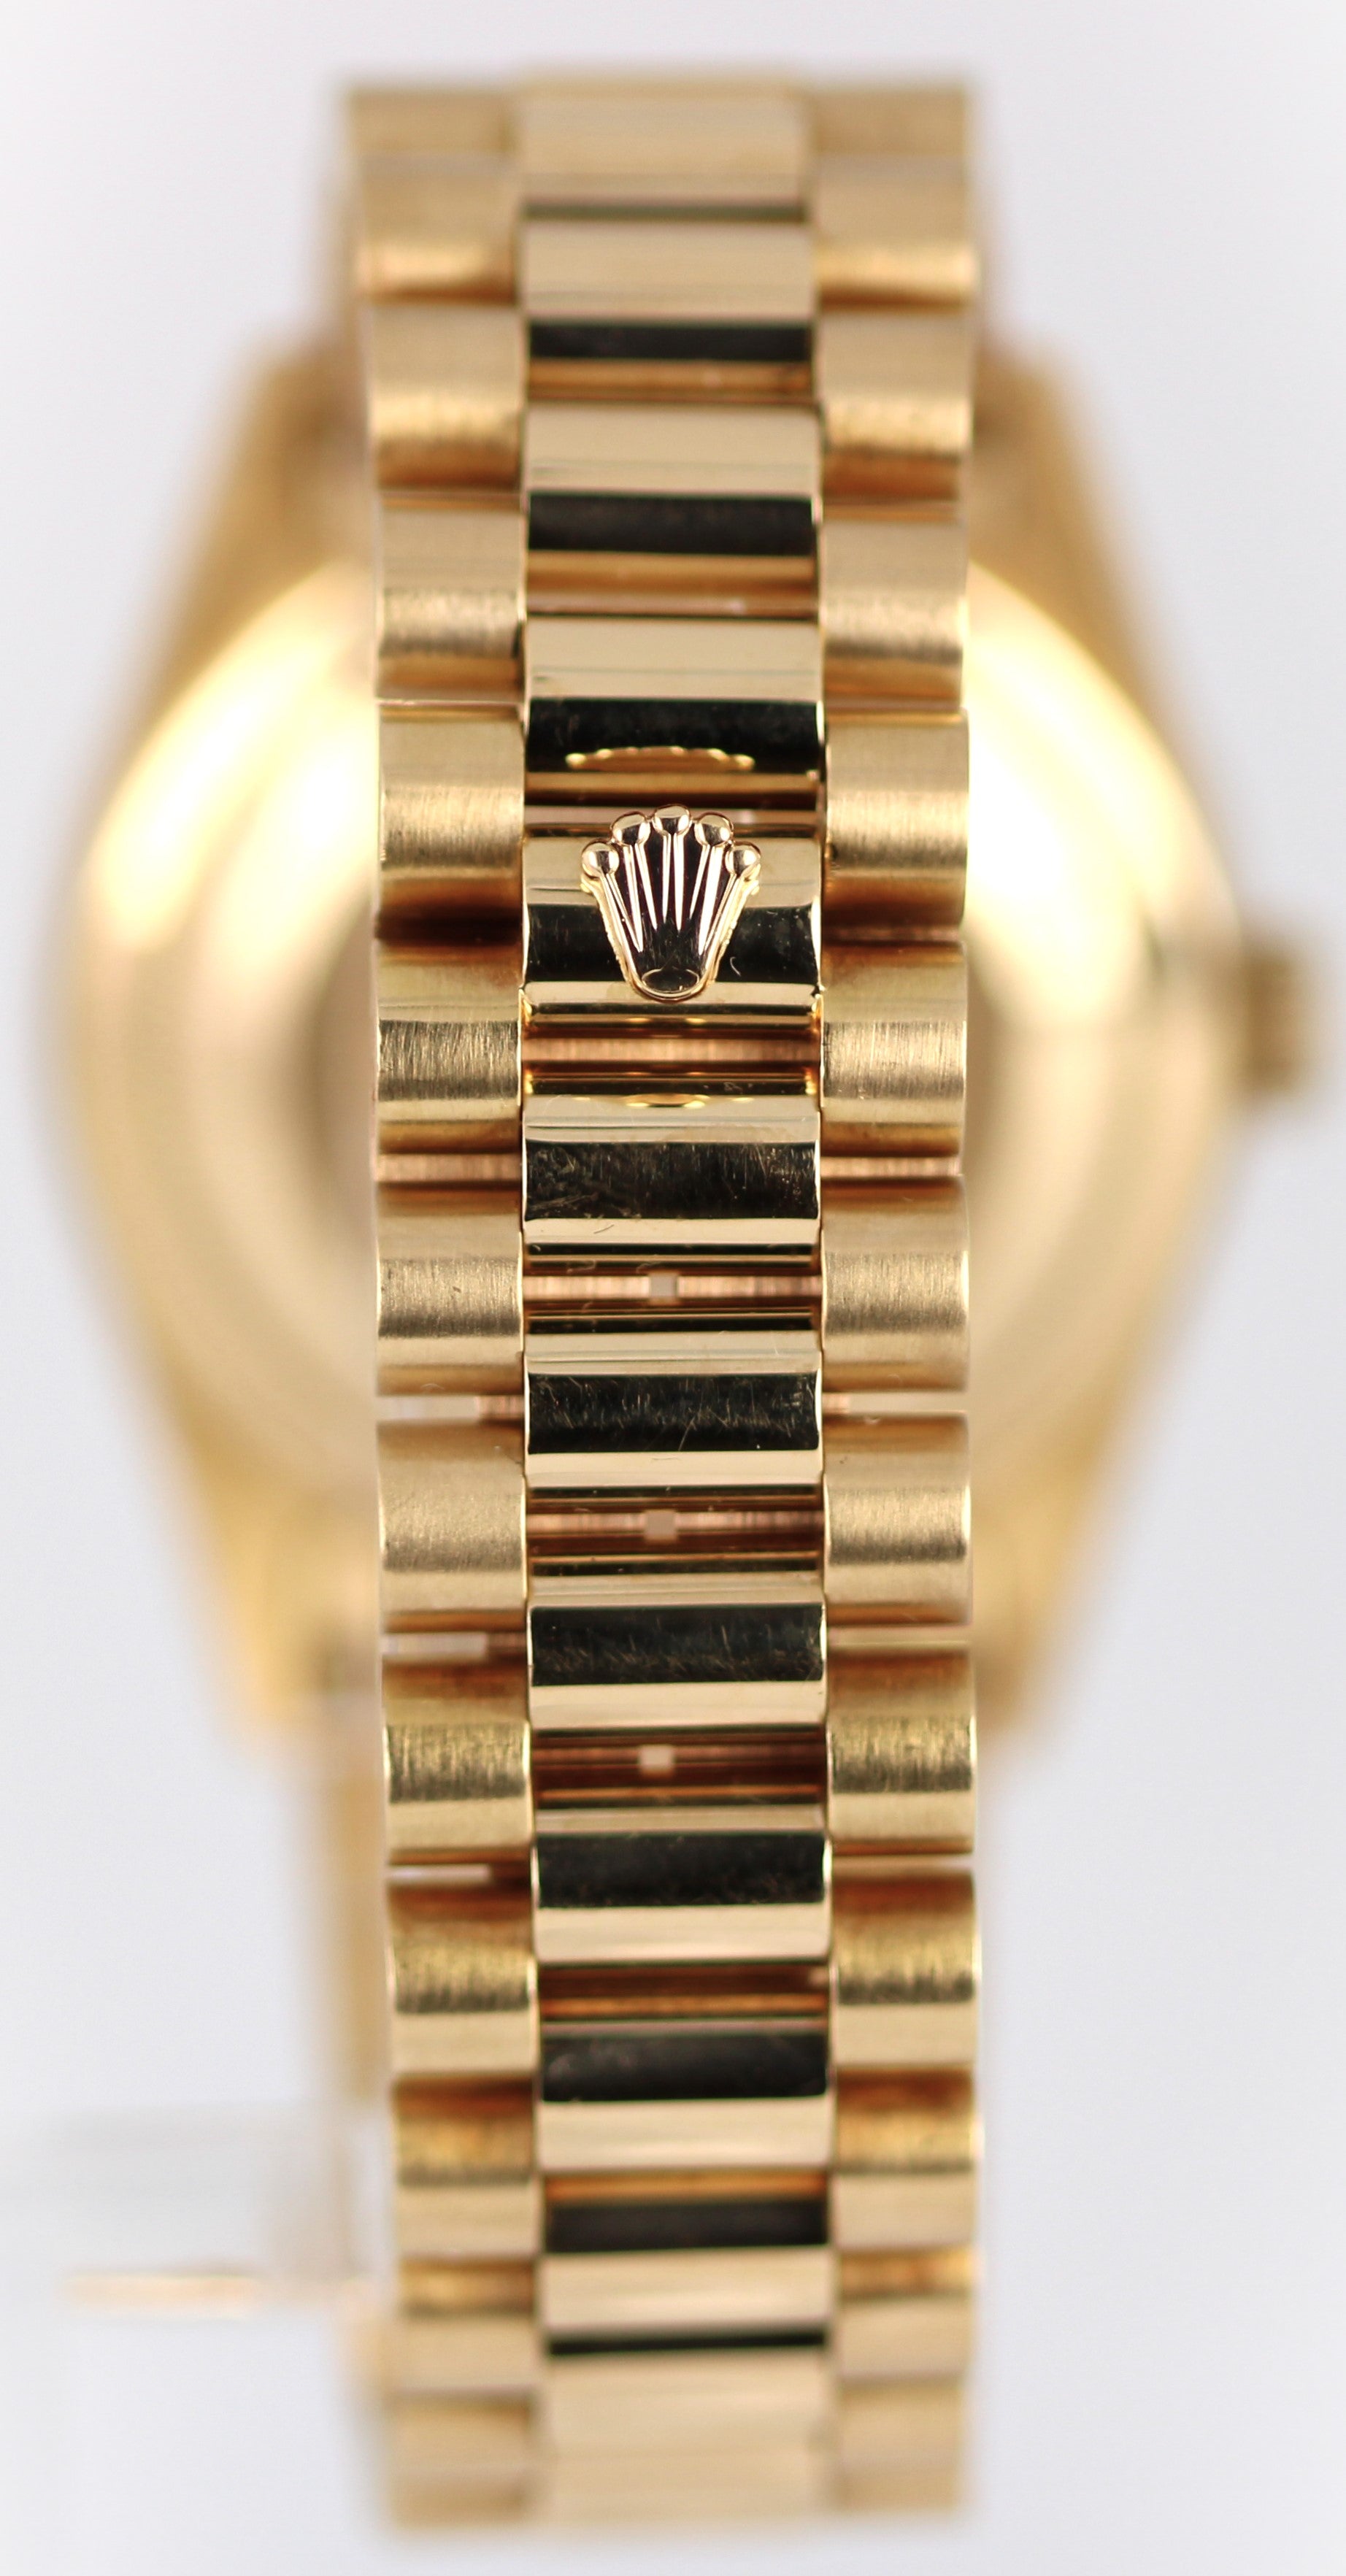 UNPOL. Rolex Day-Date President 18k Yellow Gold DIA Rubies MOP 36mm 18388 Watch